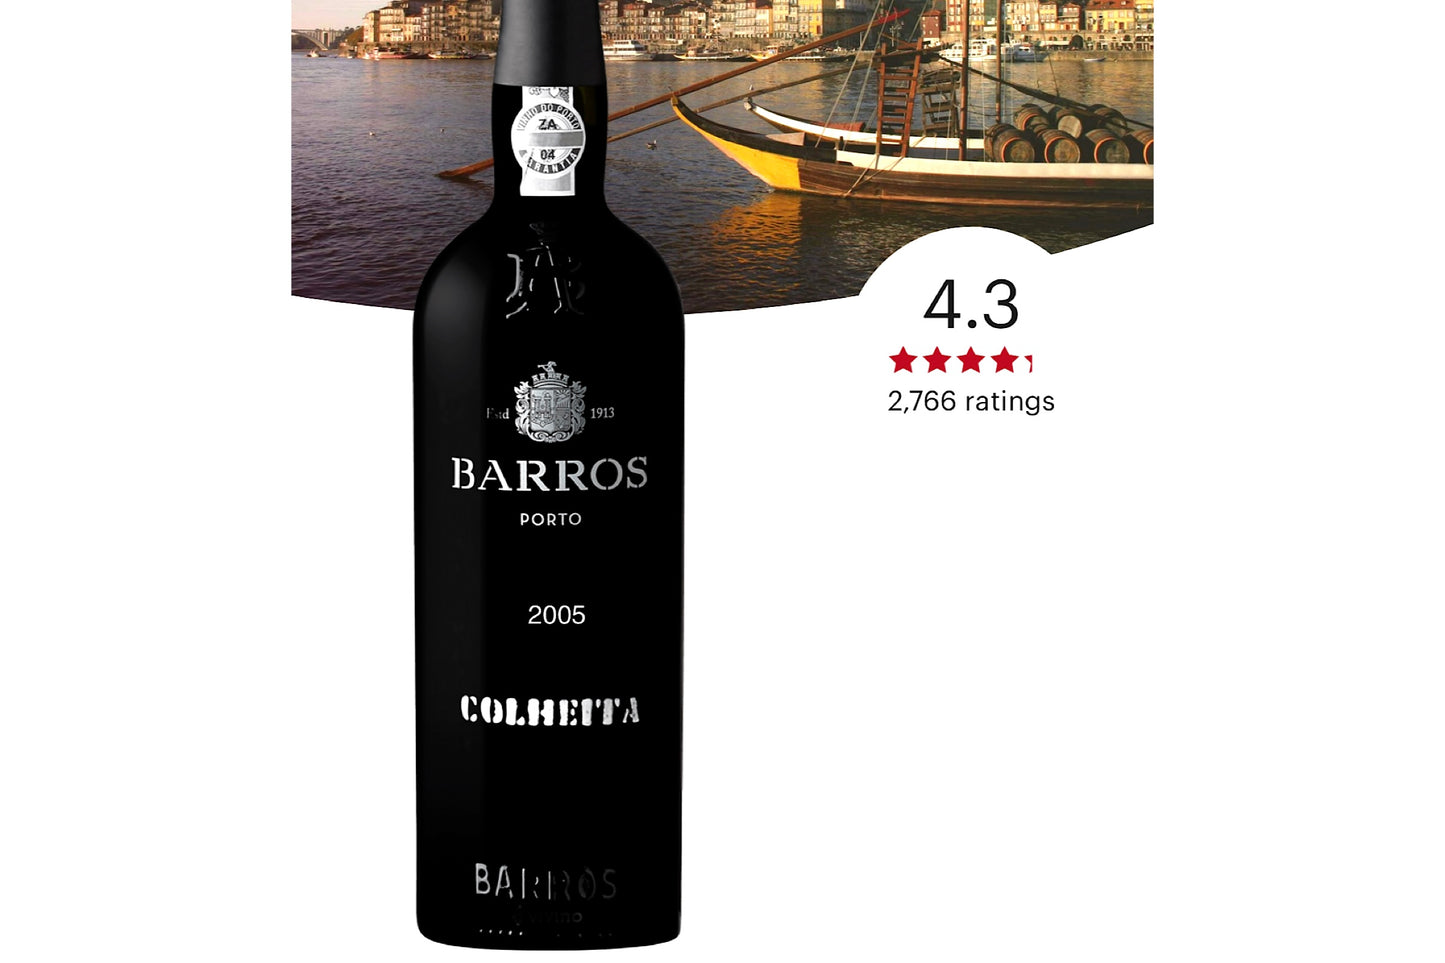 Barros Colheita Port, Douro |20%|  2005 |75cl